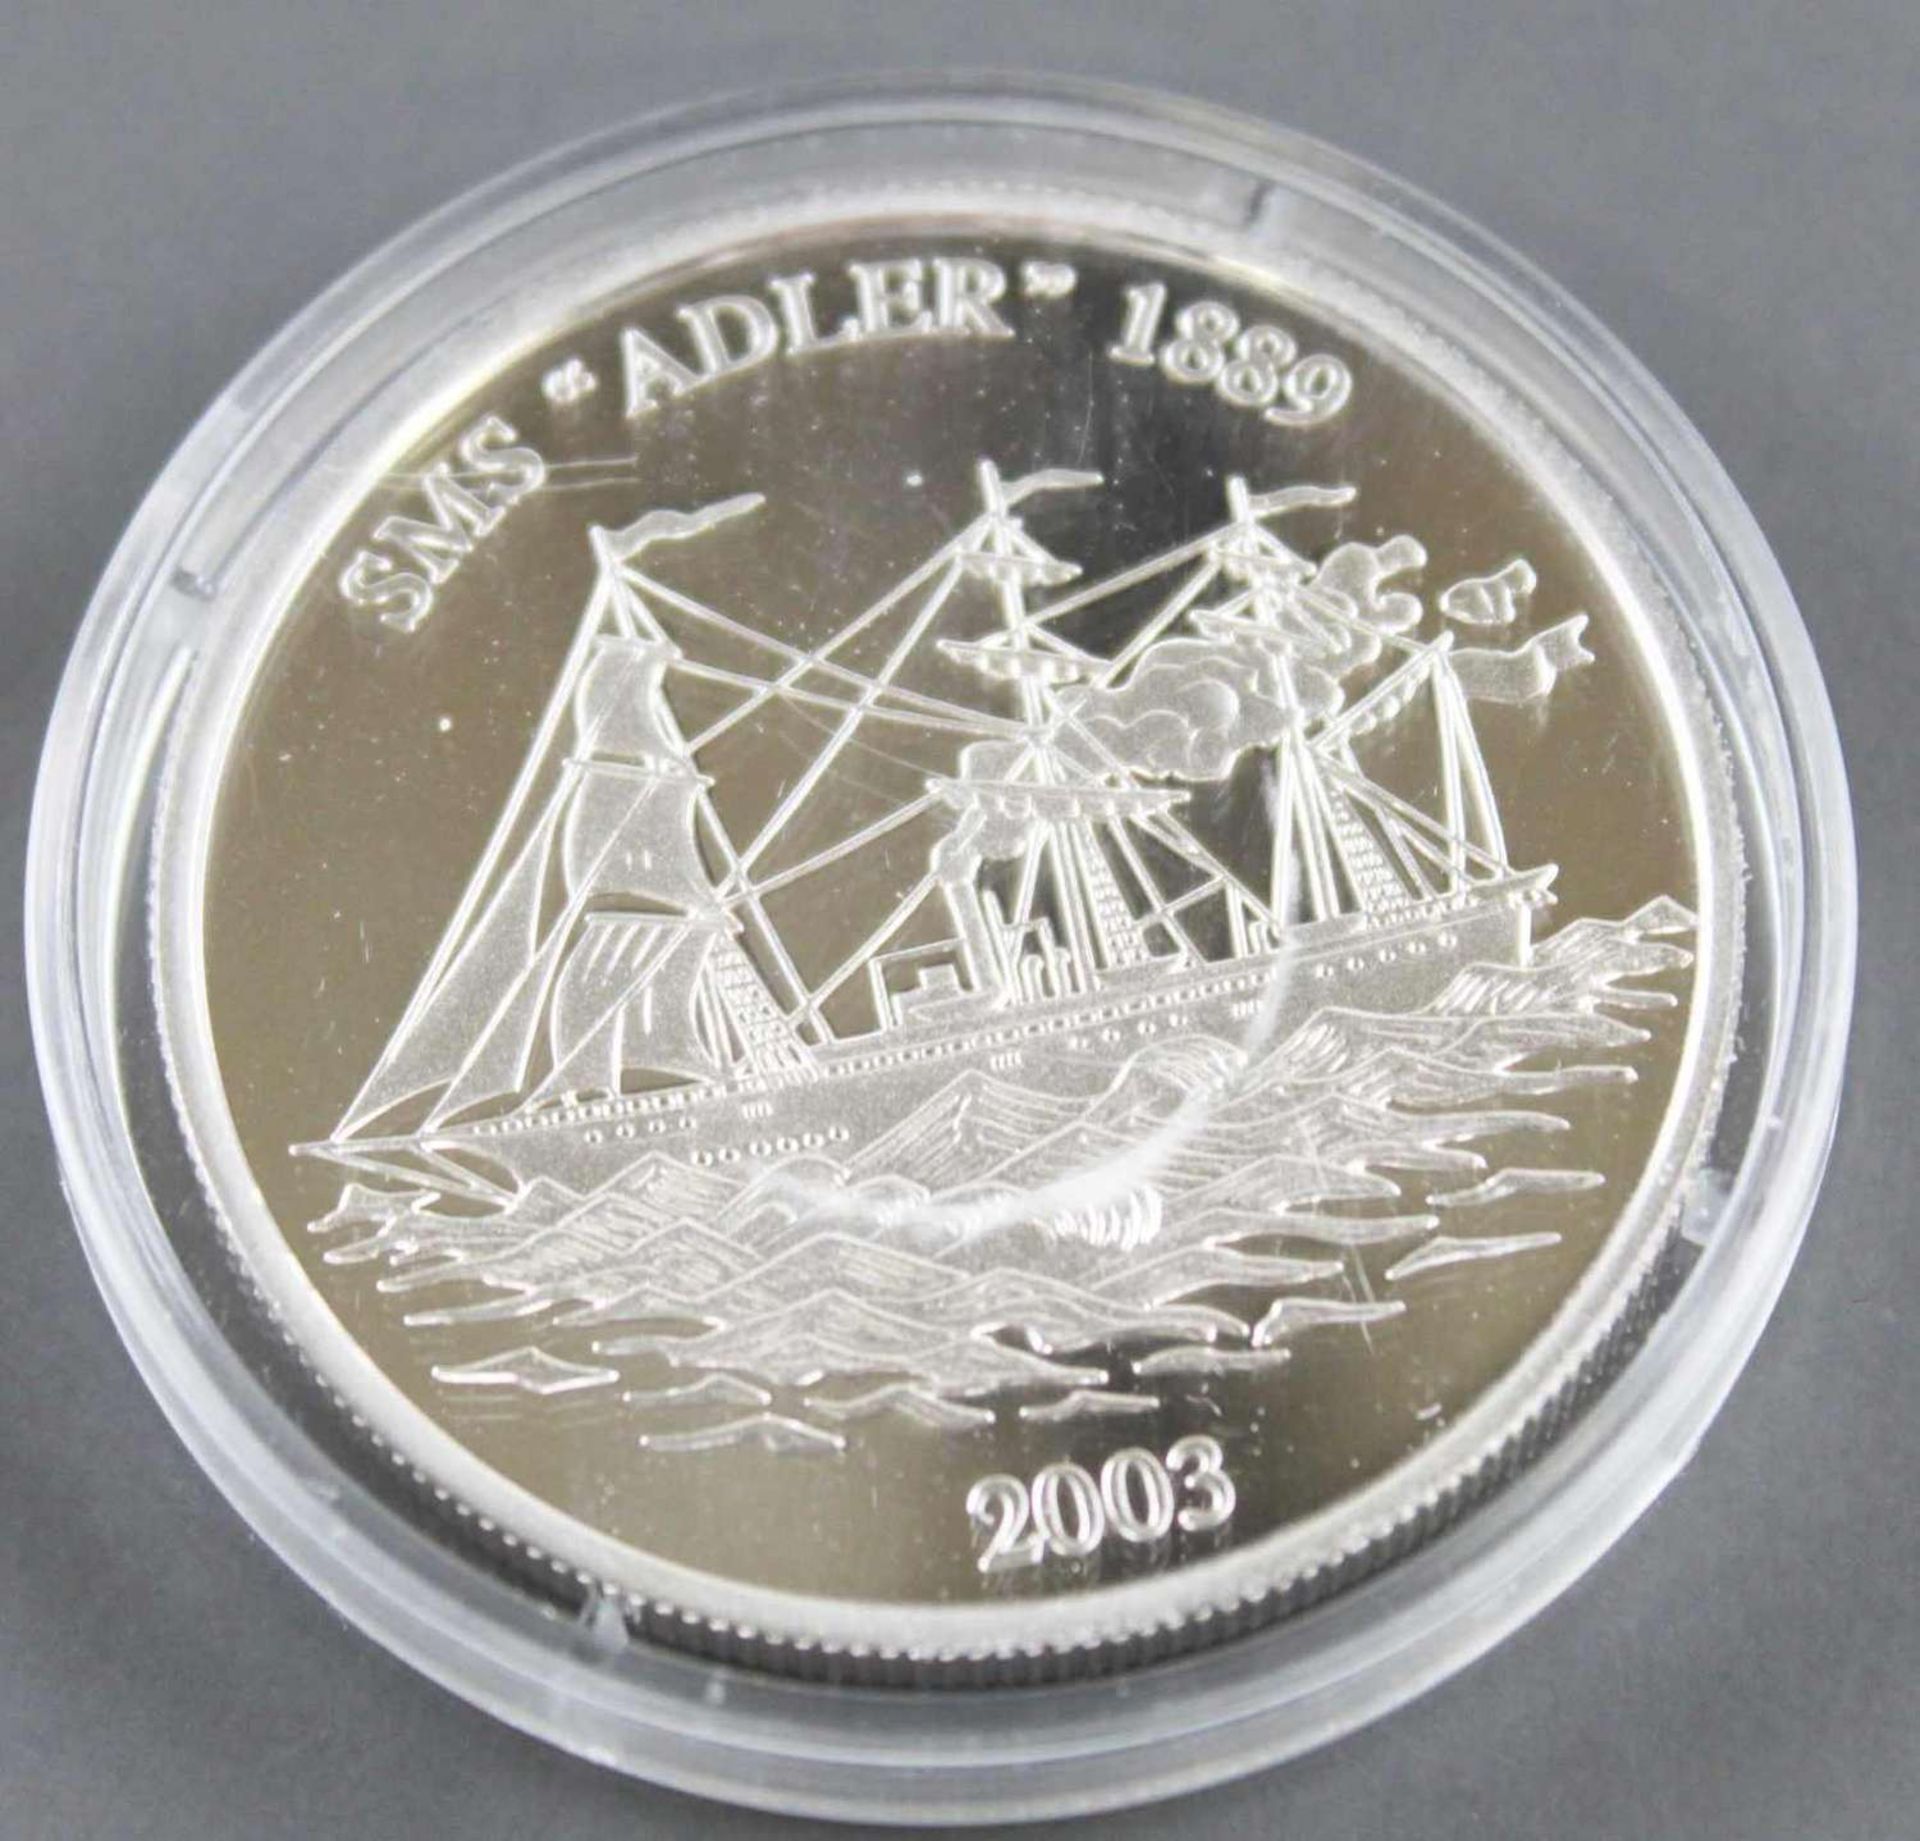 Samoa 2003, 10.- Dollar - Silbermünze "SMS Adler". Silber 925, Gewicht: ca. 28,5 g, Durchmesser: ca.